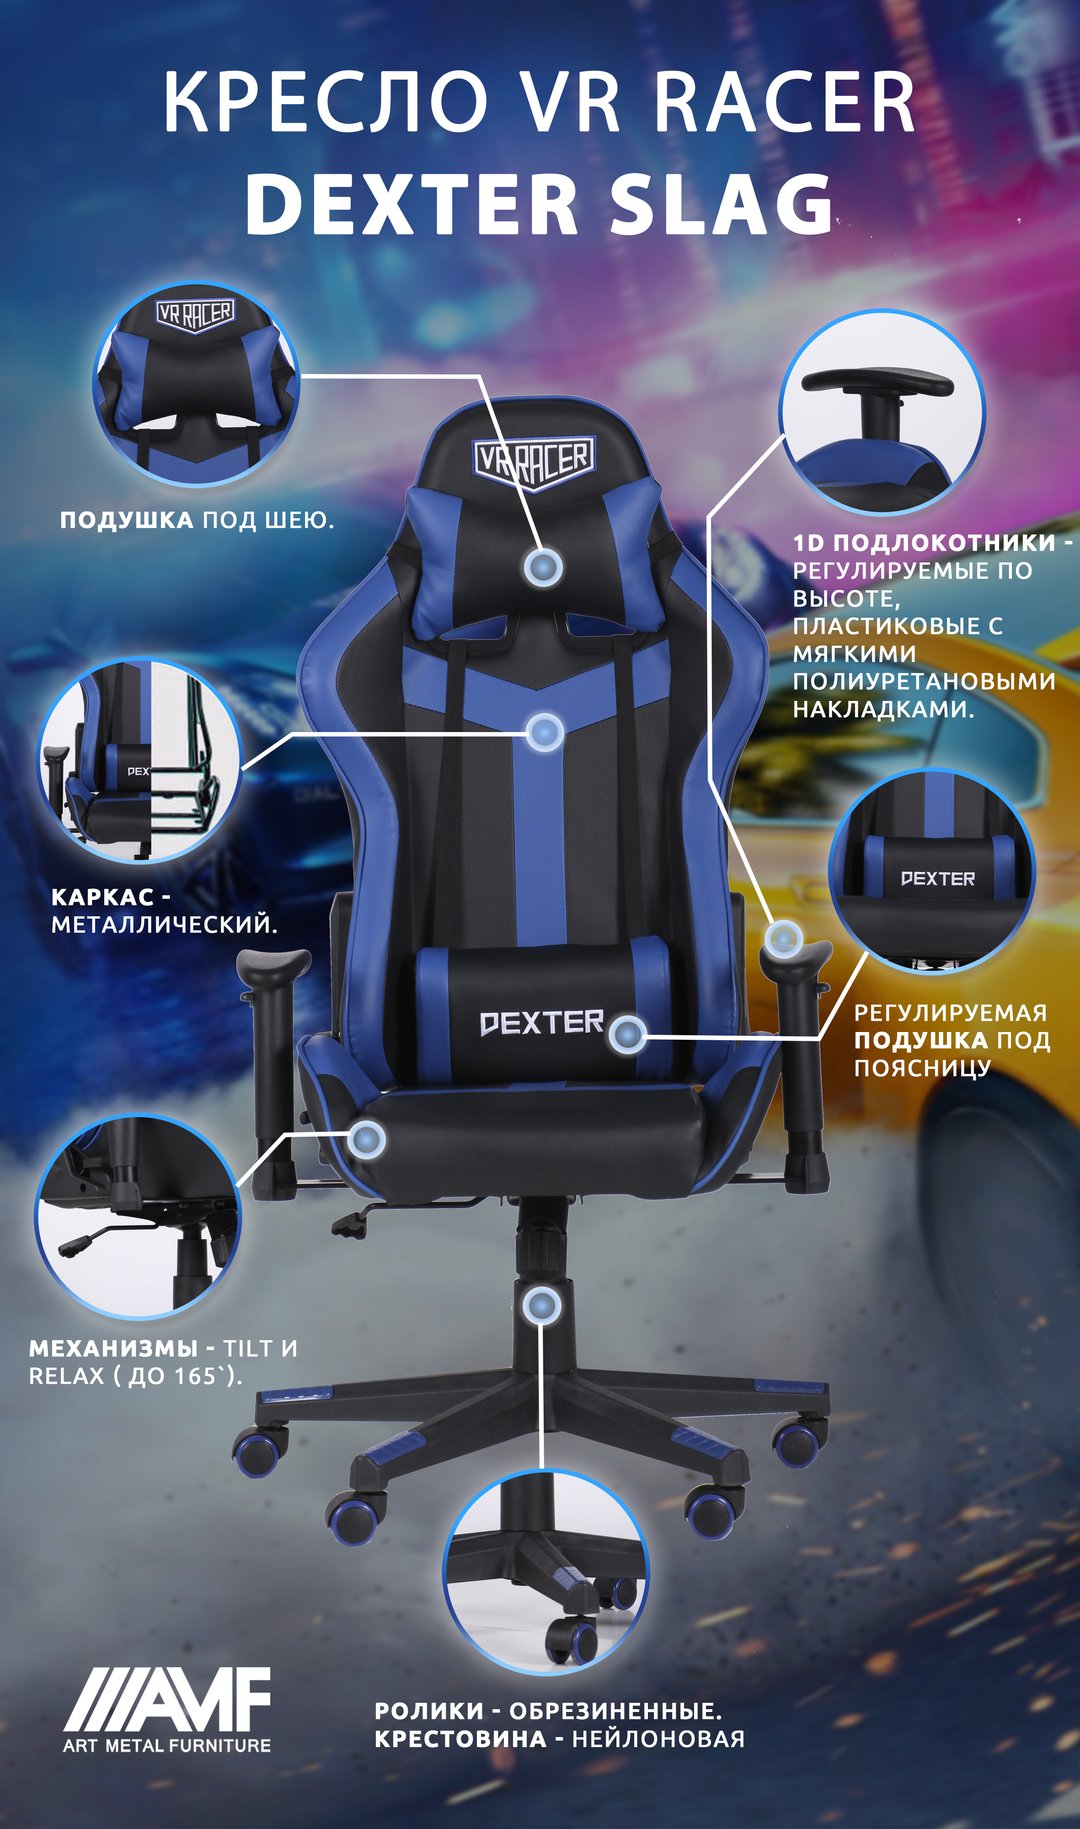 Кресло VR Racer Dexter Slag описание-2